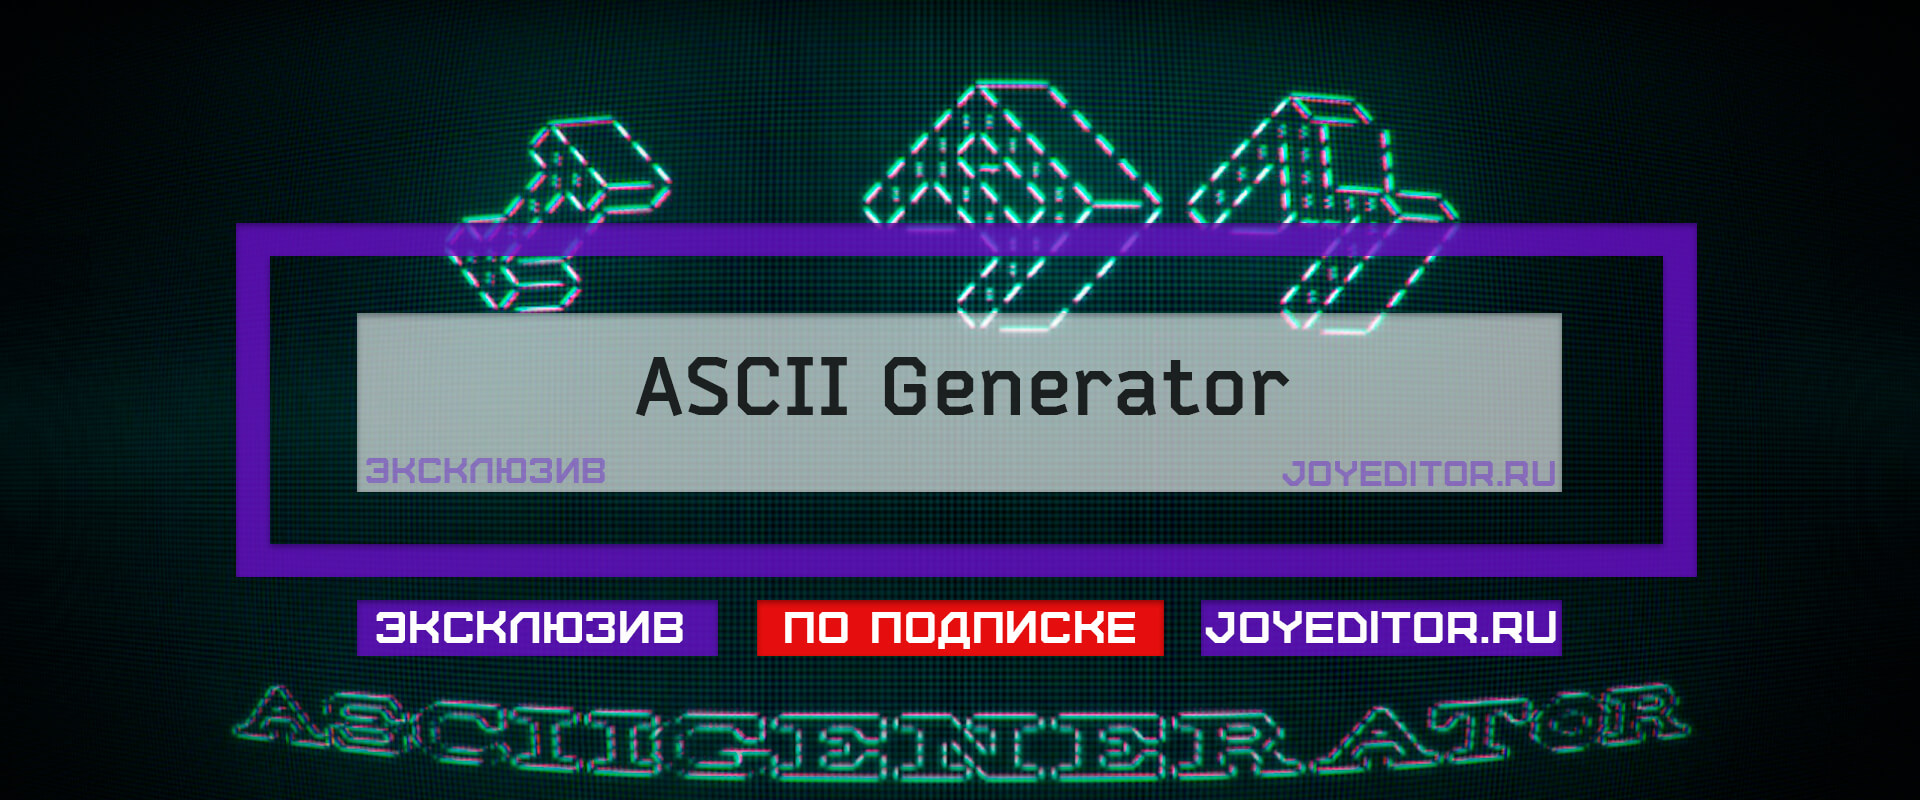 Генератор скриптов. ASCII Генератор.